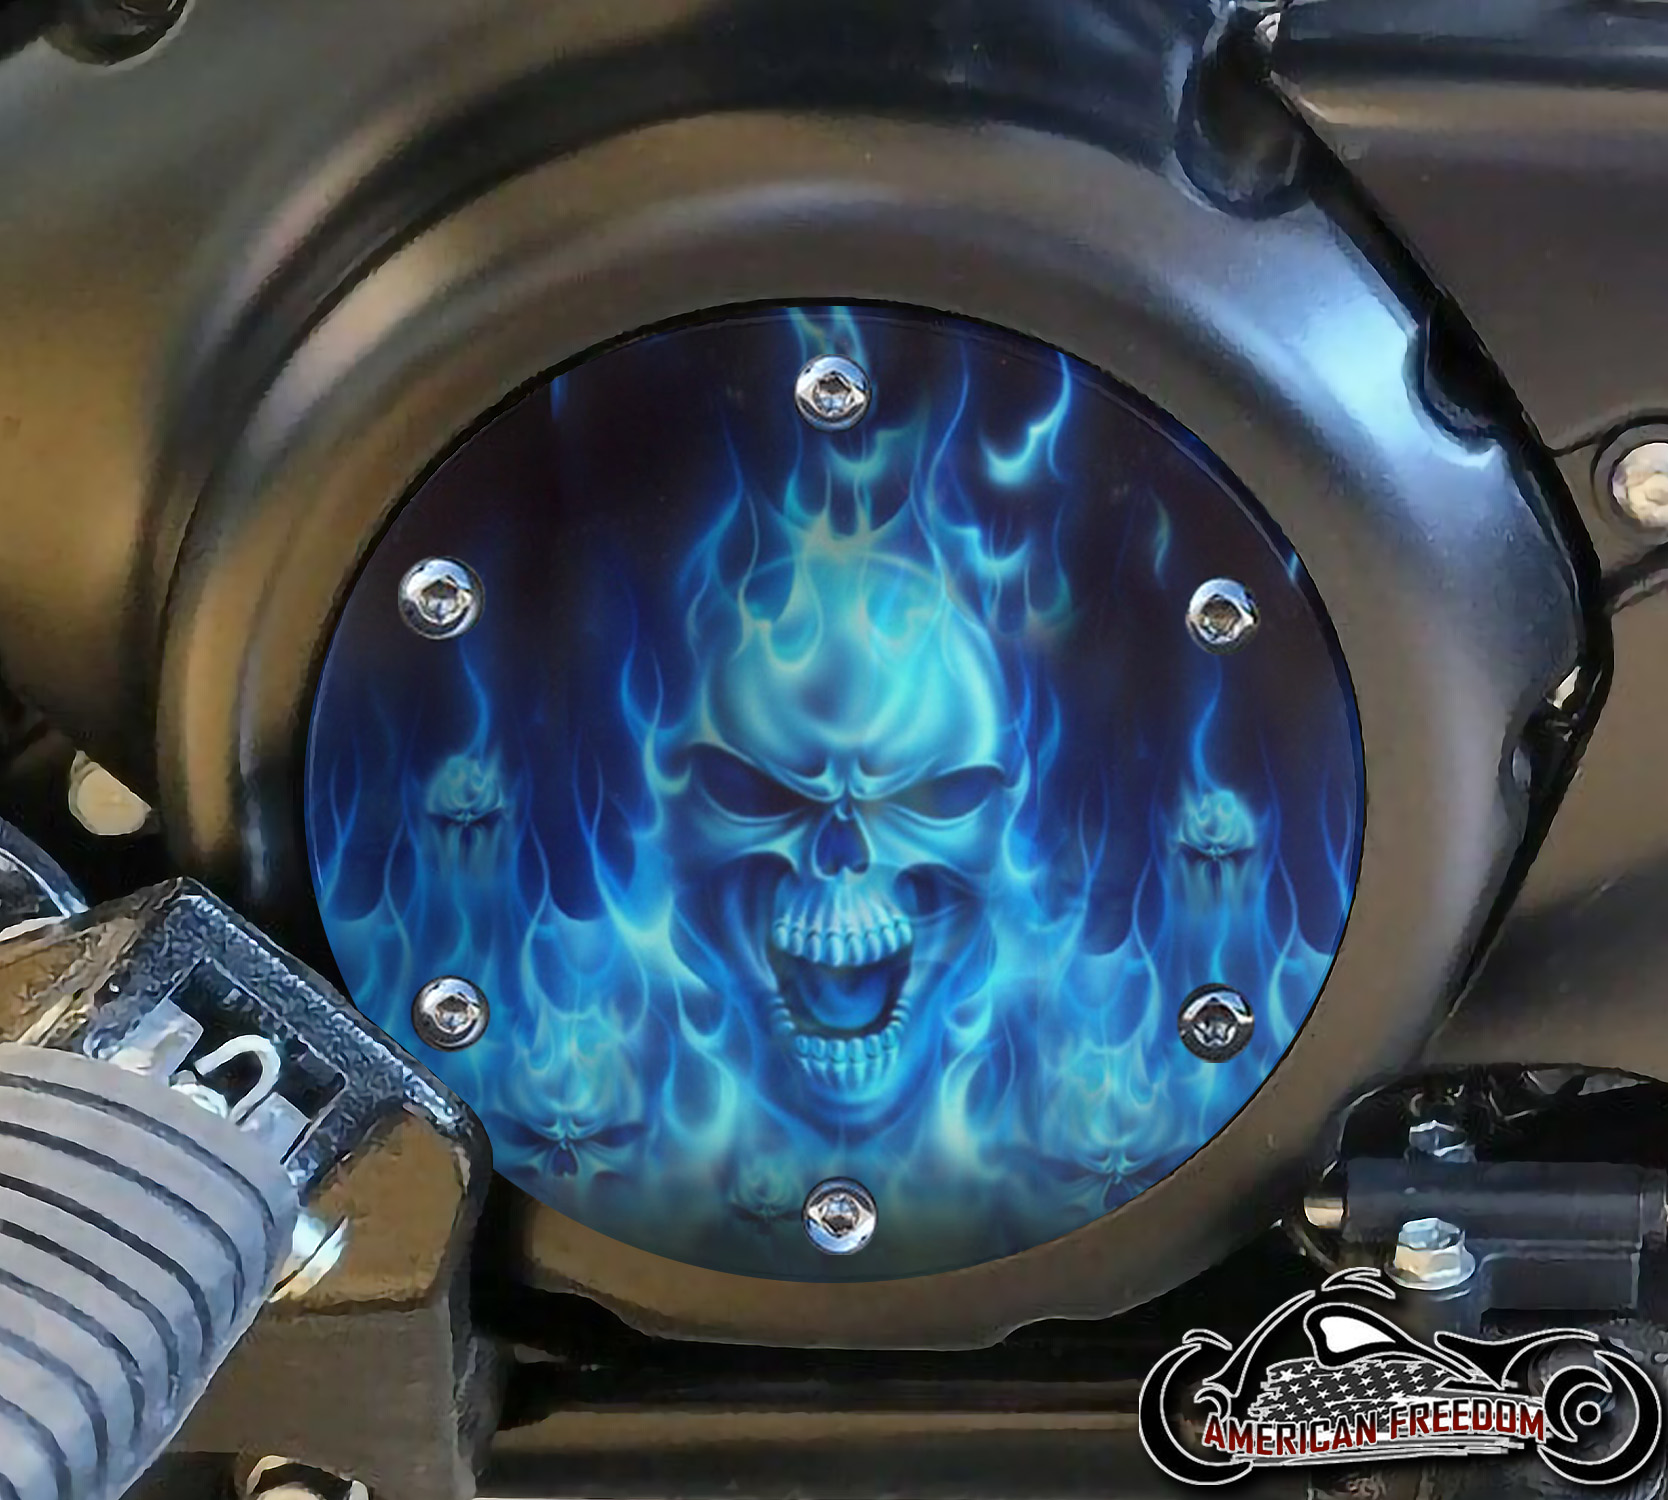 SUZUKI M109R Derby/Engine Cover - Blue Flame Skull